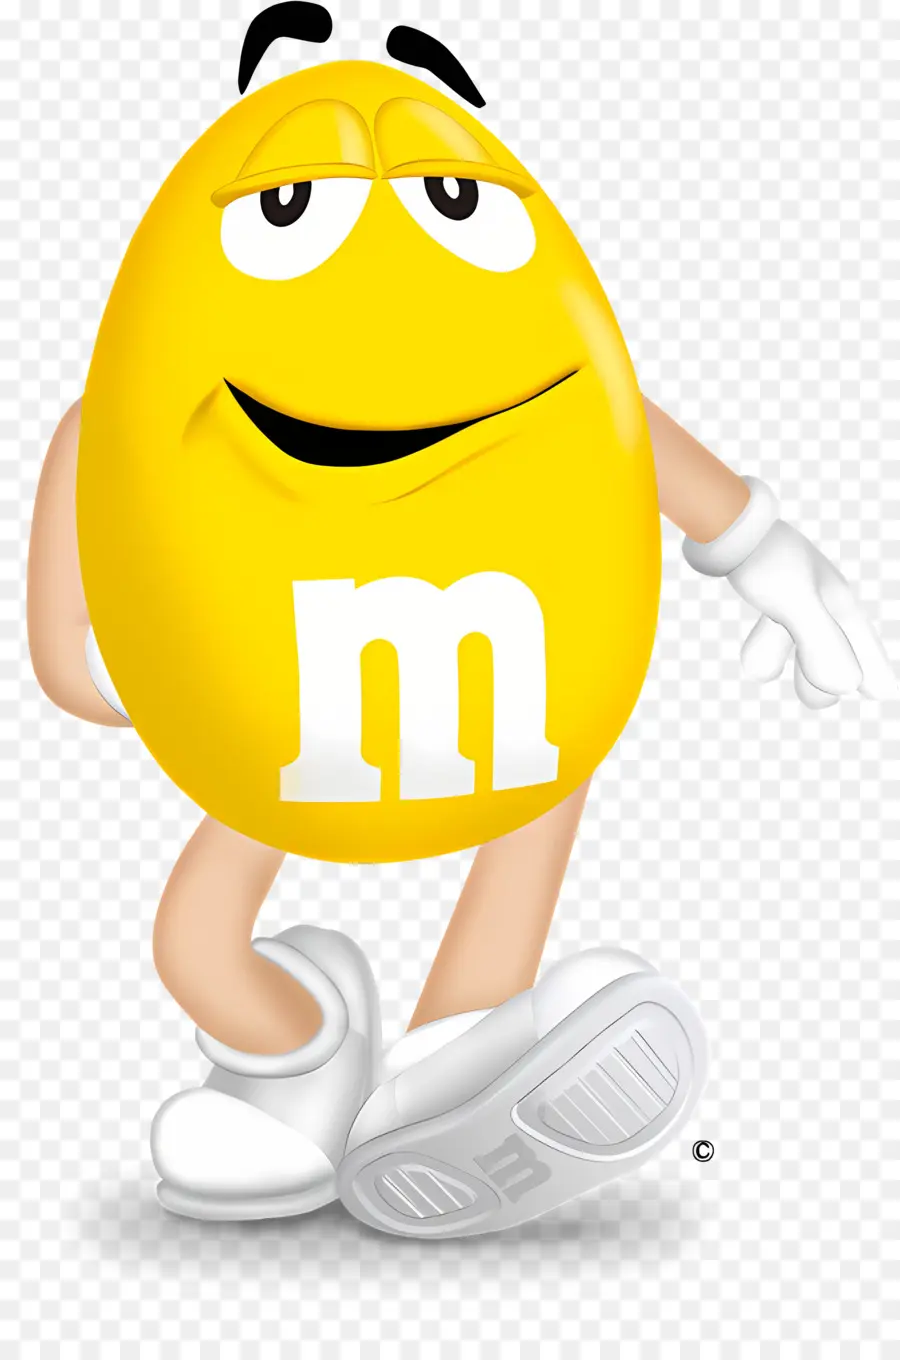 Smiley Candy Yellow Runde lächeln - Glückliche gelbe Süßigkeiten mit Schuhen, lächeln